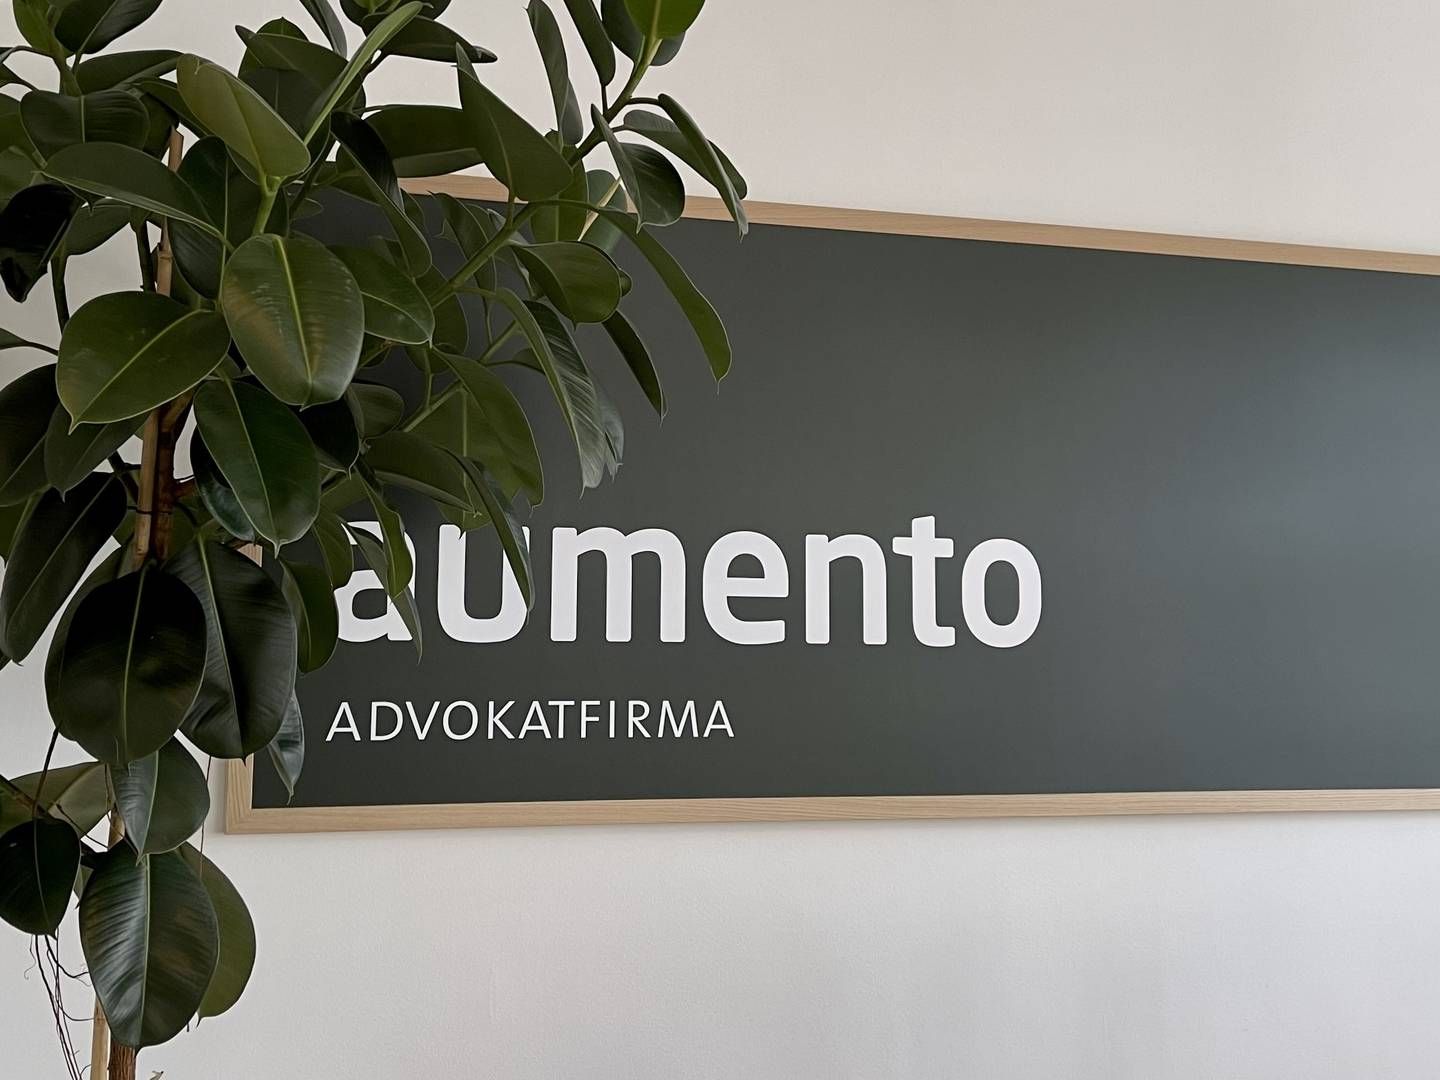 Advokaterne i Aumento markedsfører sig på samme platform og bor under samme tag på Ny Østergade i centrum af København. | Foto: Aumento / PR